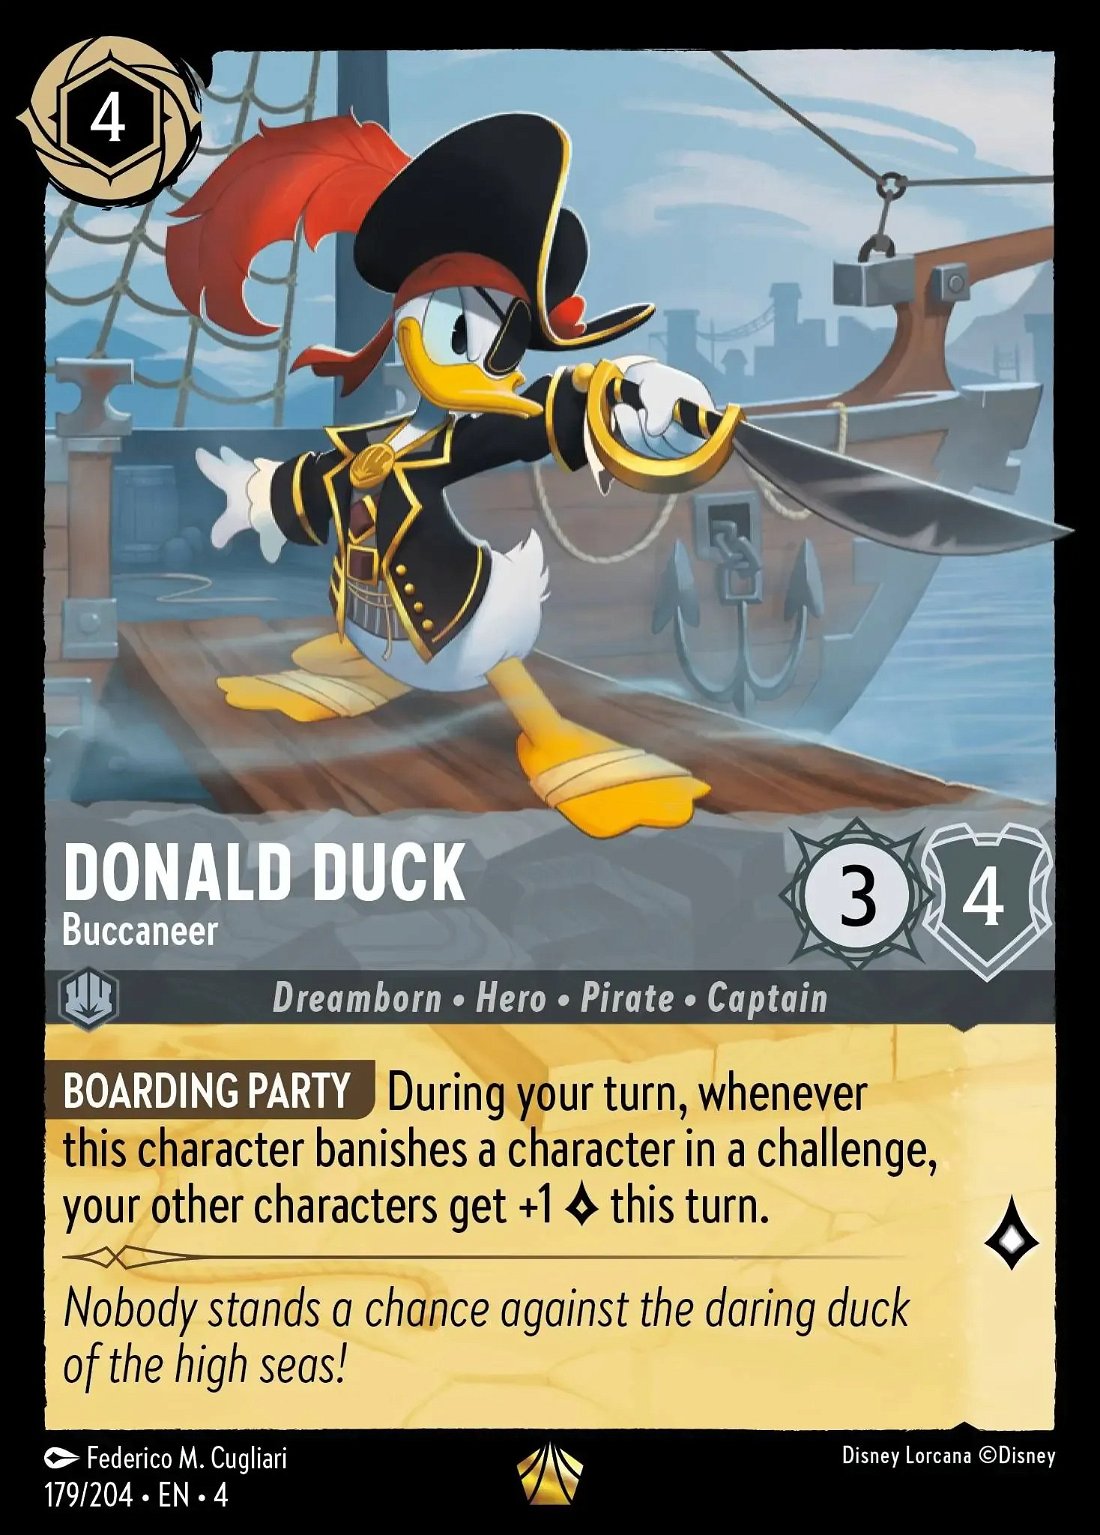 Donald Duck - Buccaneer Crop image Wallpaper